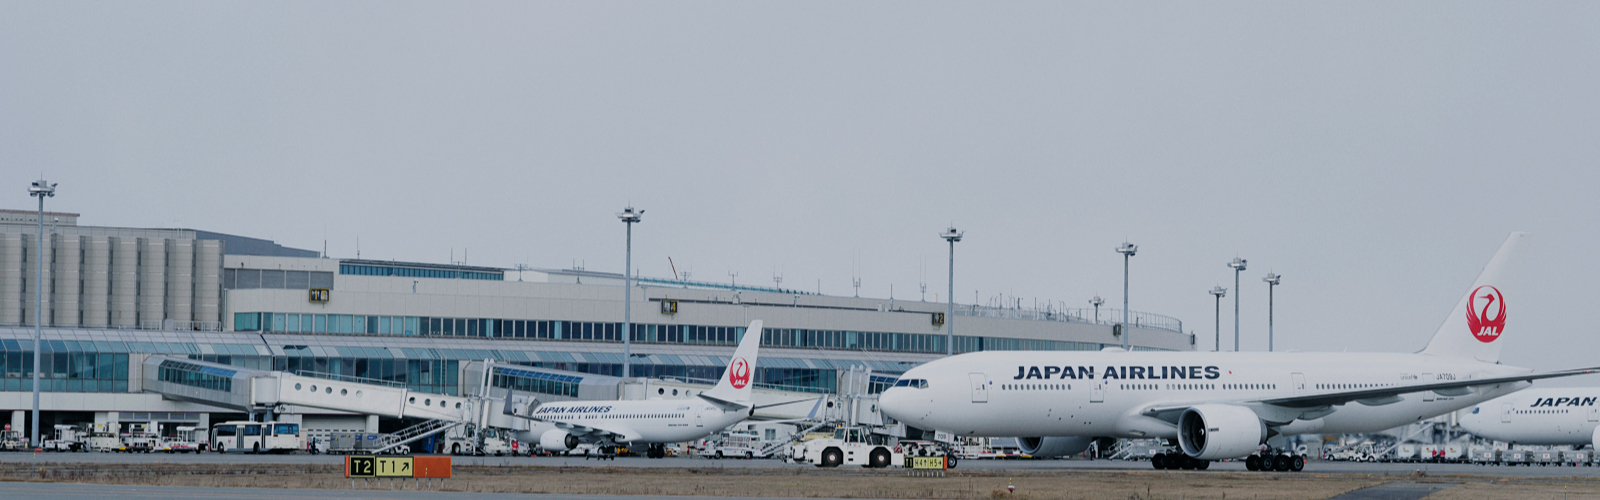 株式会社JALグランドサービス札幌 JAL Grand Service in Sapporo